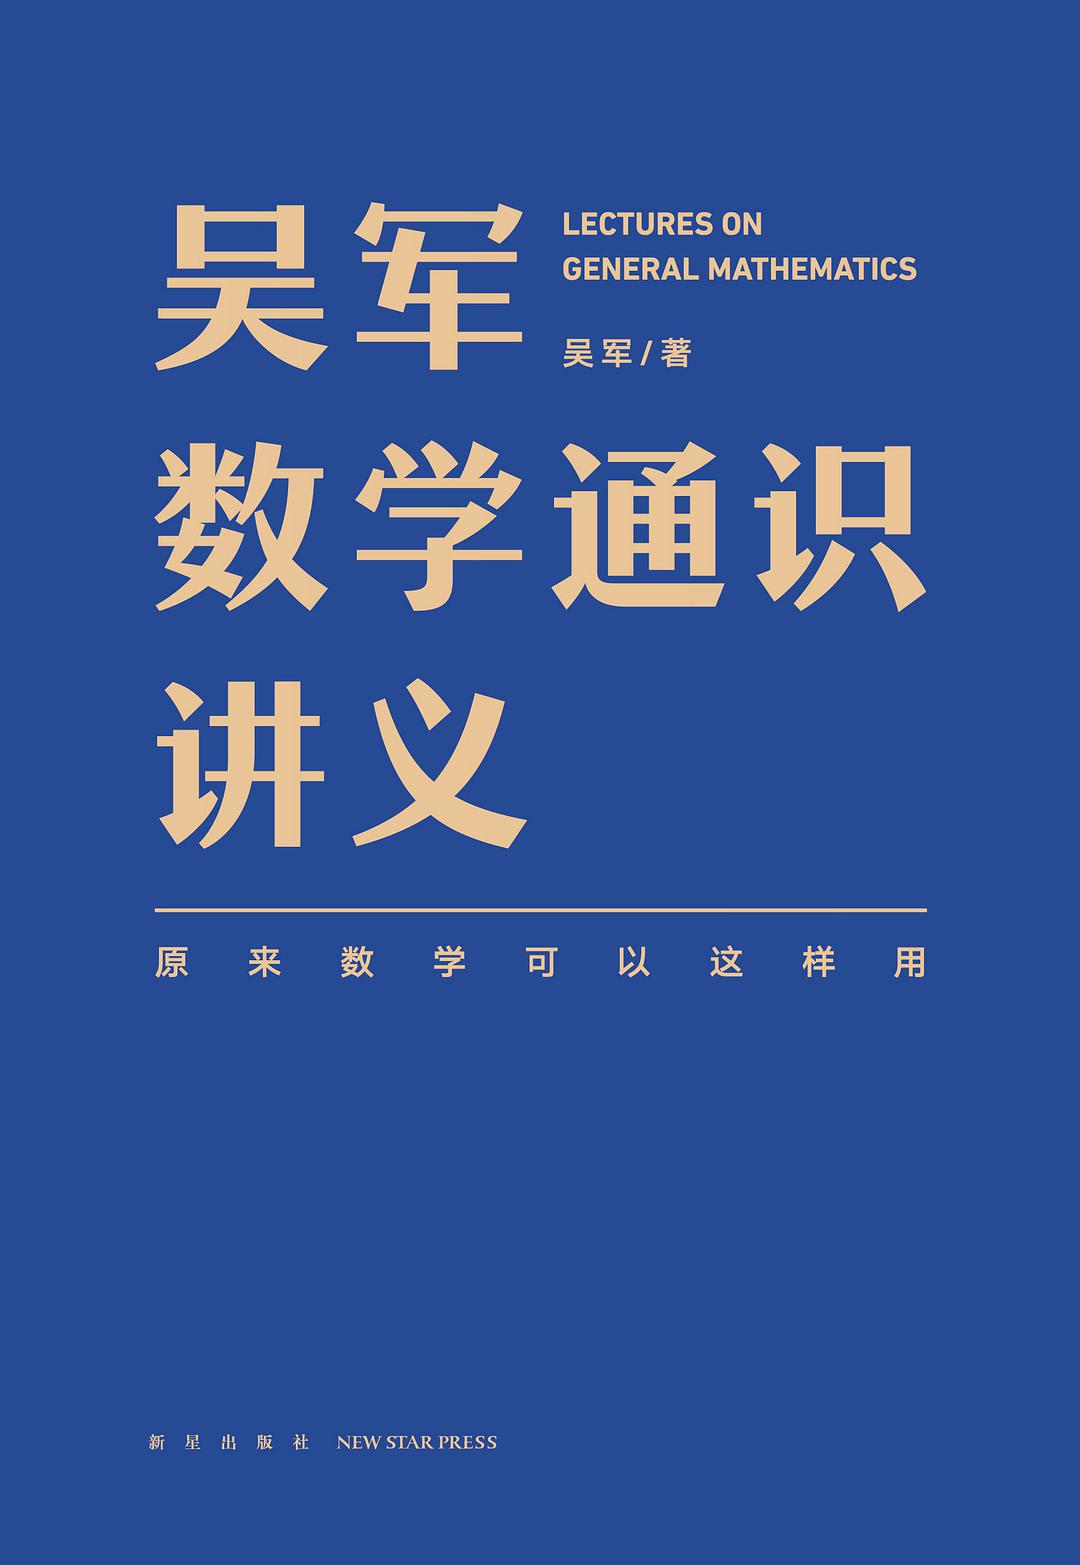 吴军: 吴军数学通识讲义 (中文 language, 2021, 新星出版社)